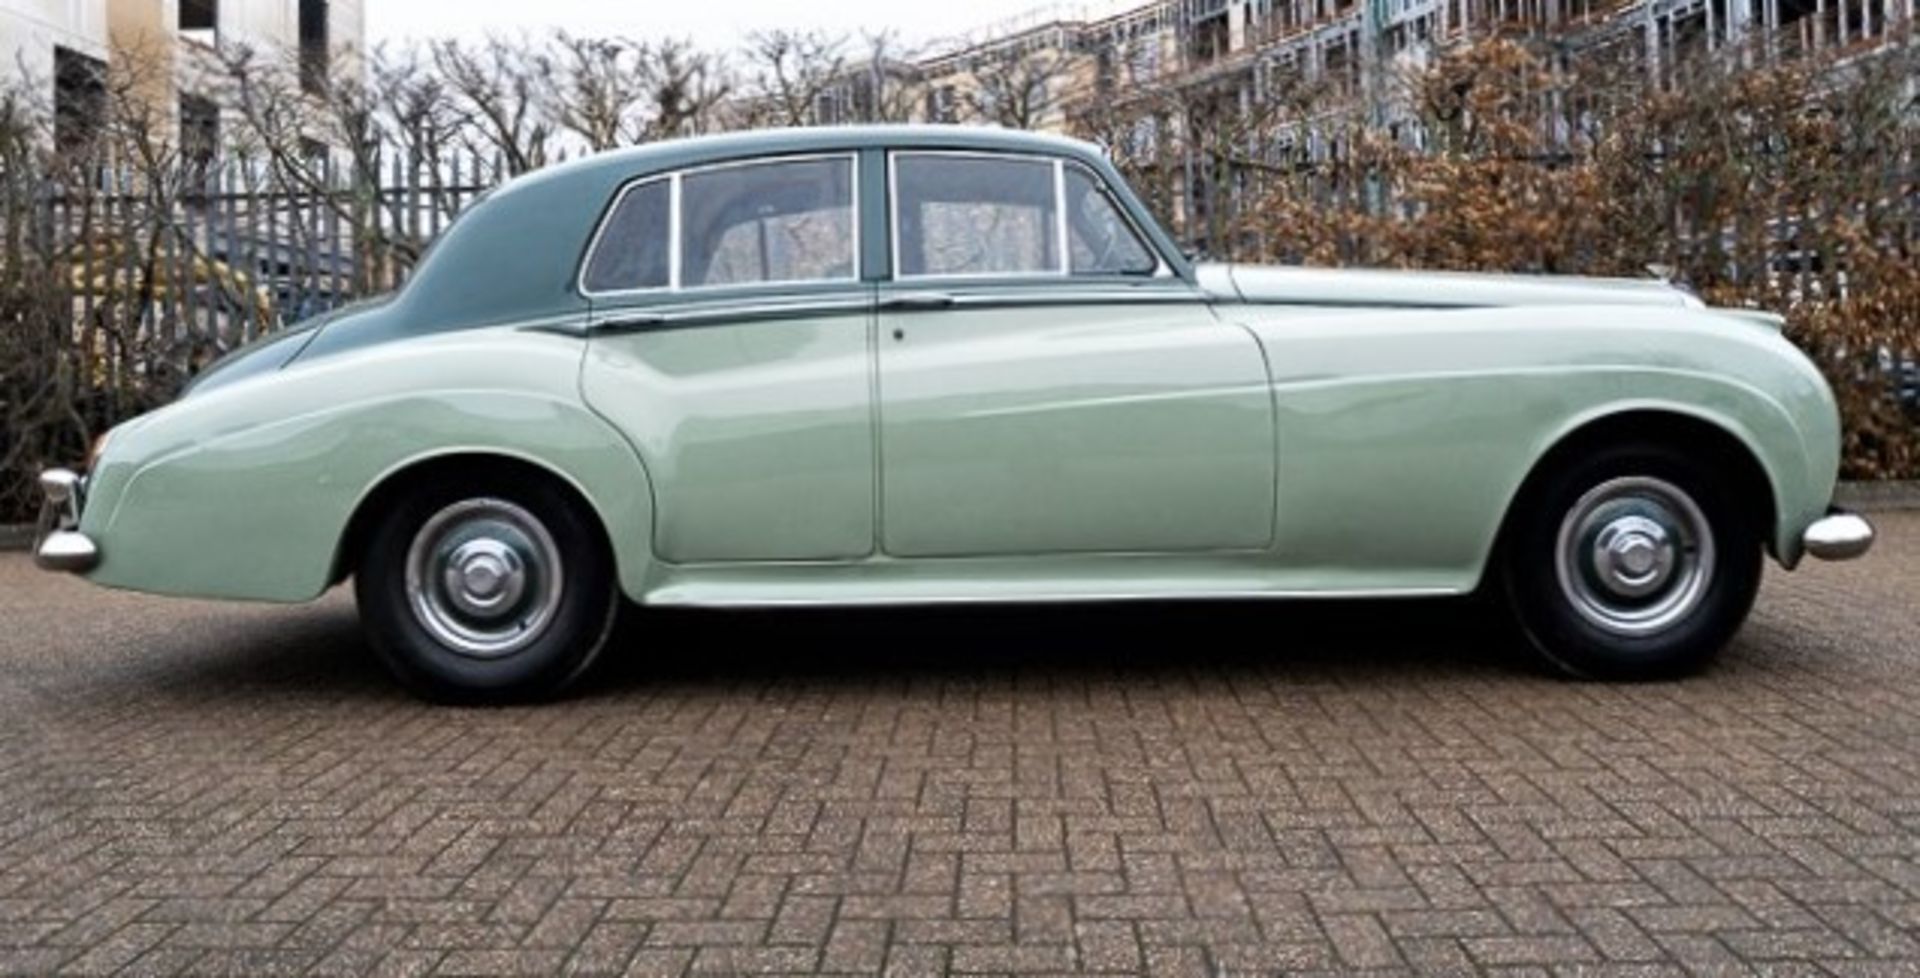 1958 Bentley S1 Standard Steel Saloon - Image 2 of 18